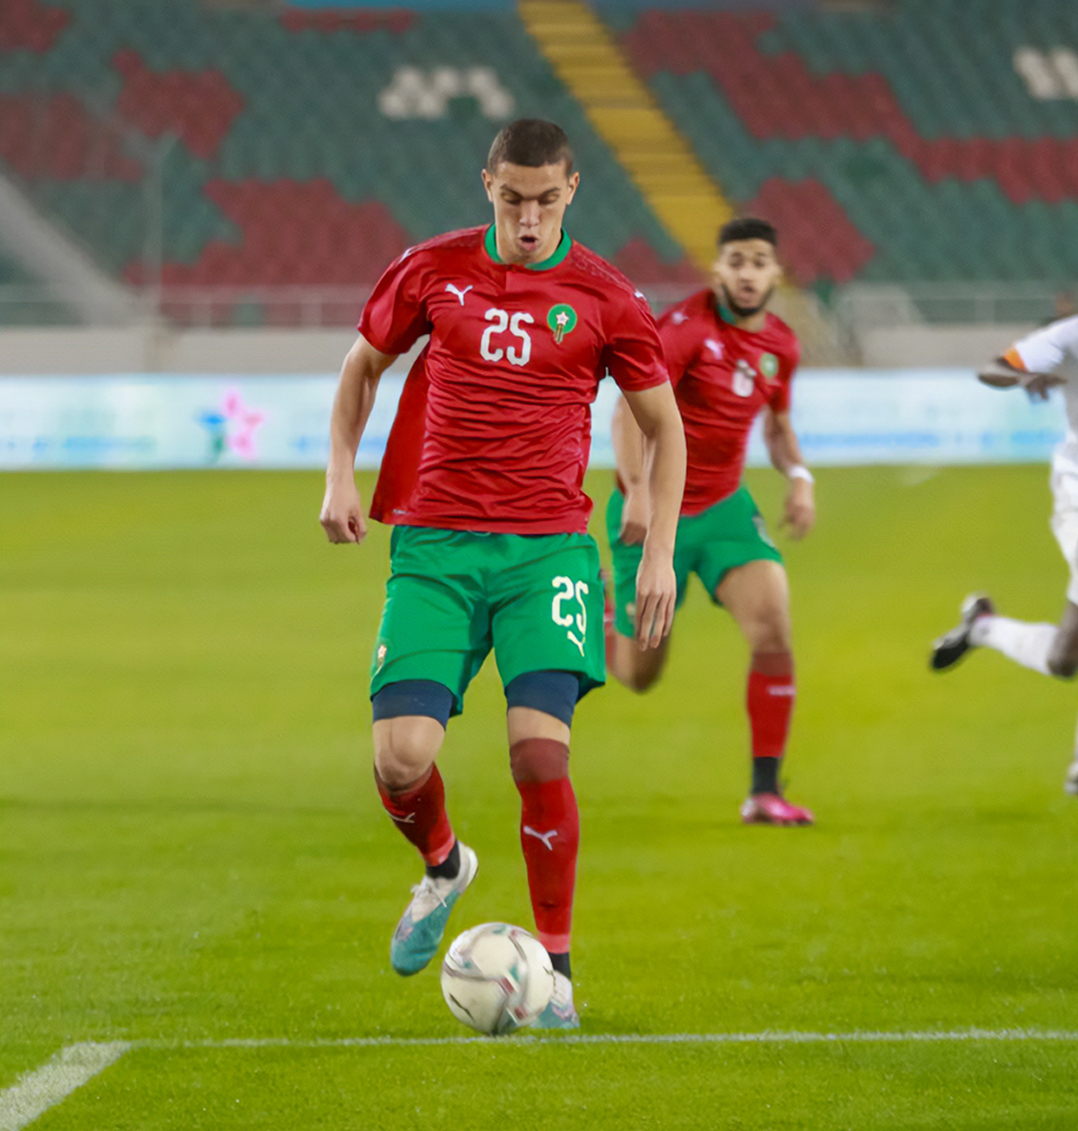 ✅ Sélectionné avec l’équipe du Maroc U23, notre attaquant, Amine @El_Ouazzani9, s’est illustré hier soir en inscrivant un doublé face à la Zambie ! ⚽️⚽️

#TeamEAG #WarRaok